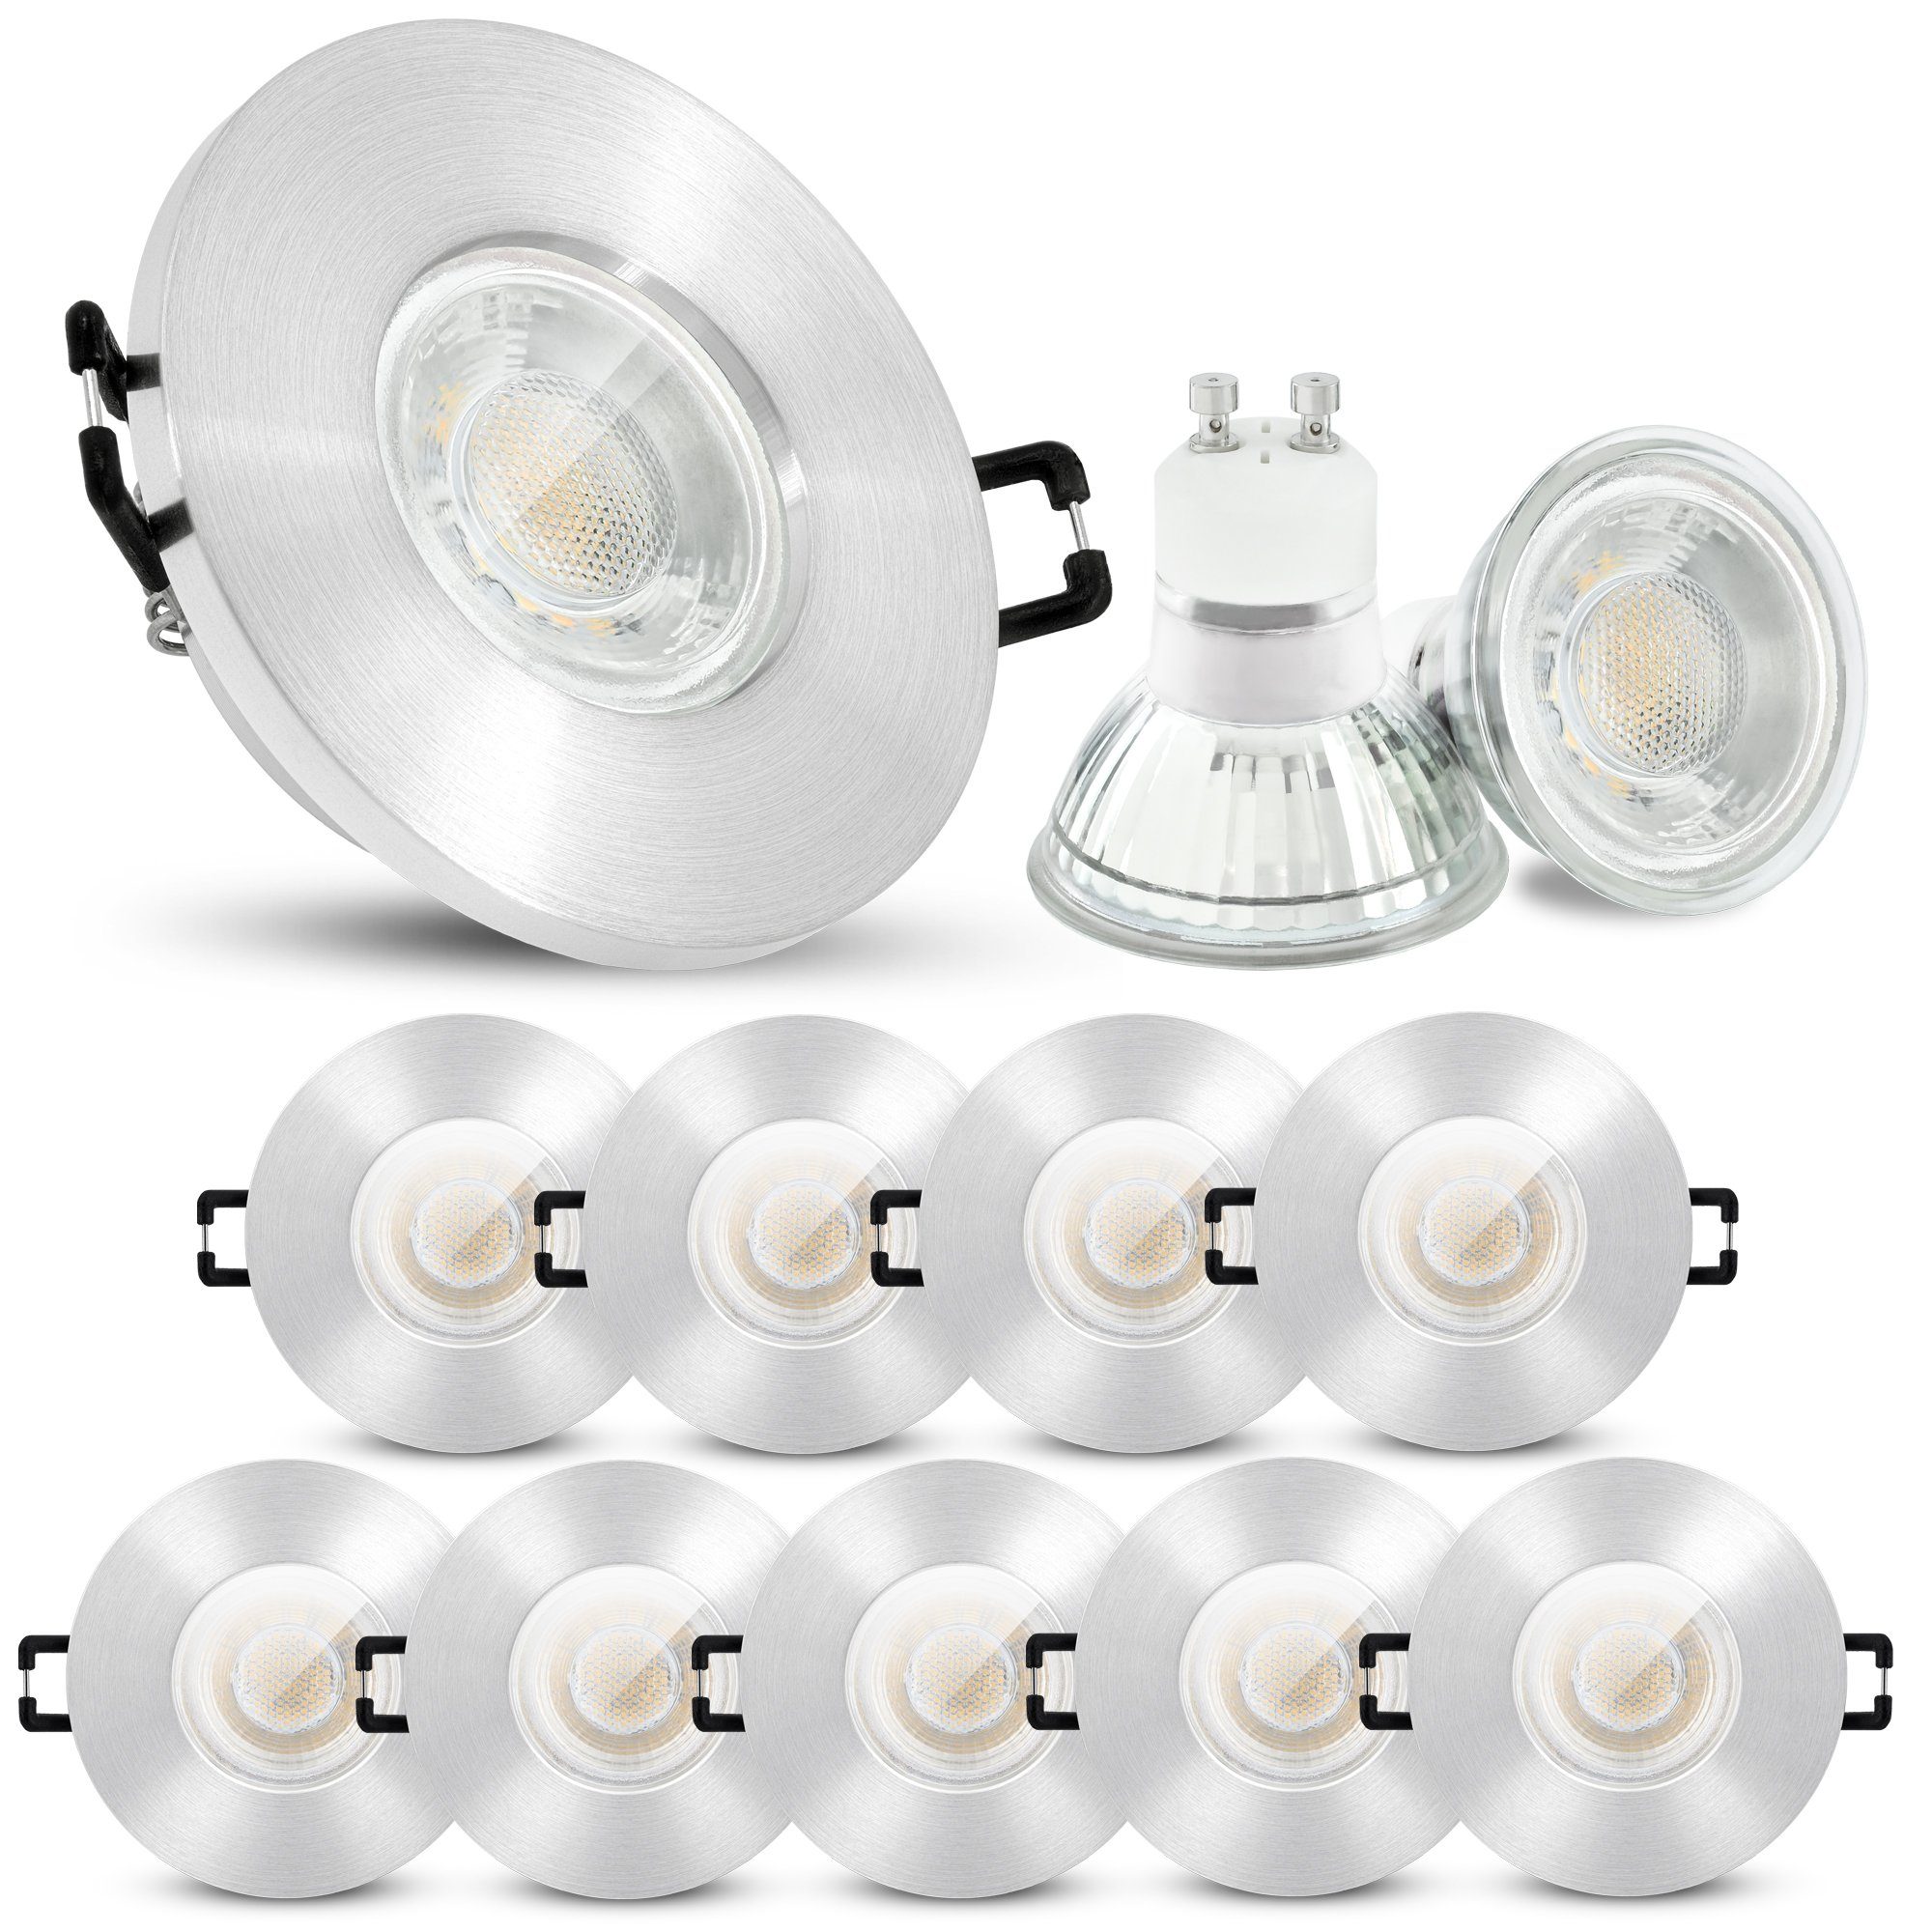 linovum LED Einbaustrahler 10er Set LED Einbaustrahler IP65 neutralweiss GU10 3W 230V, Leuchtmittel inklusive, Leuchtmittel inklusive